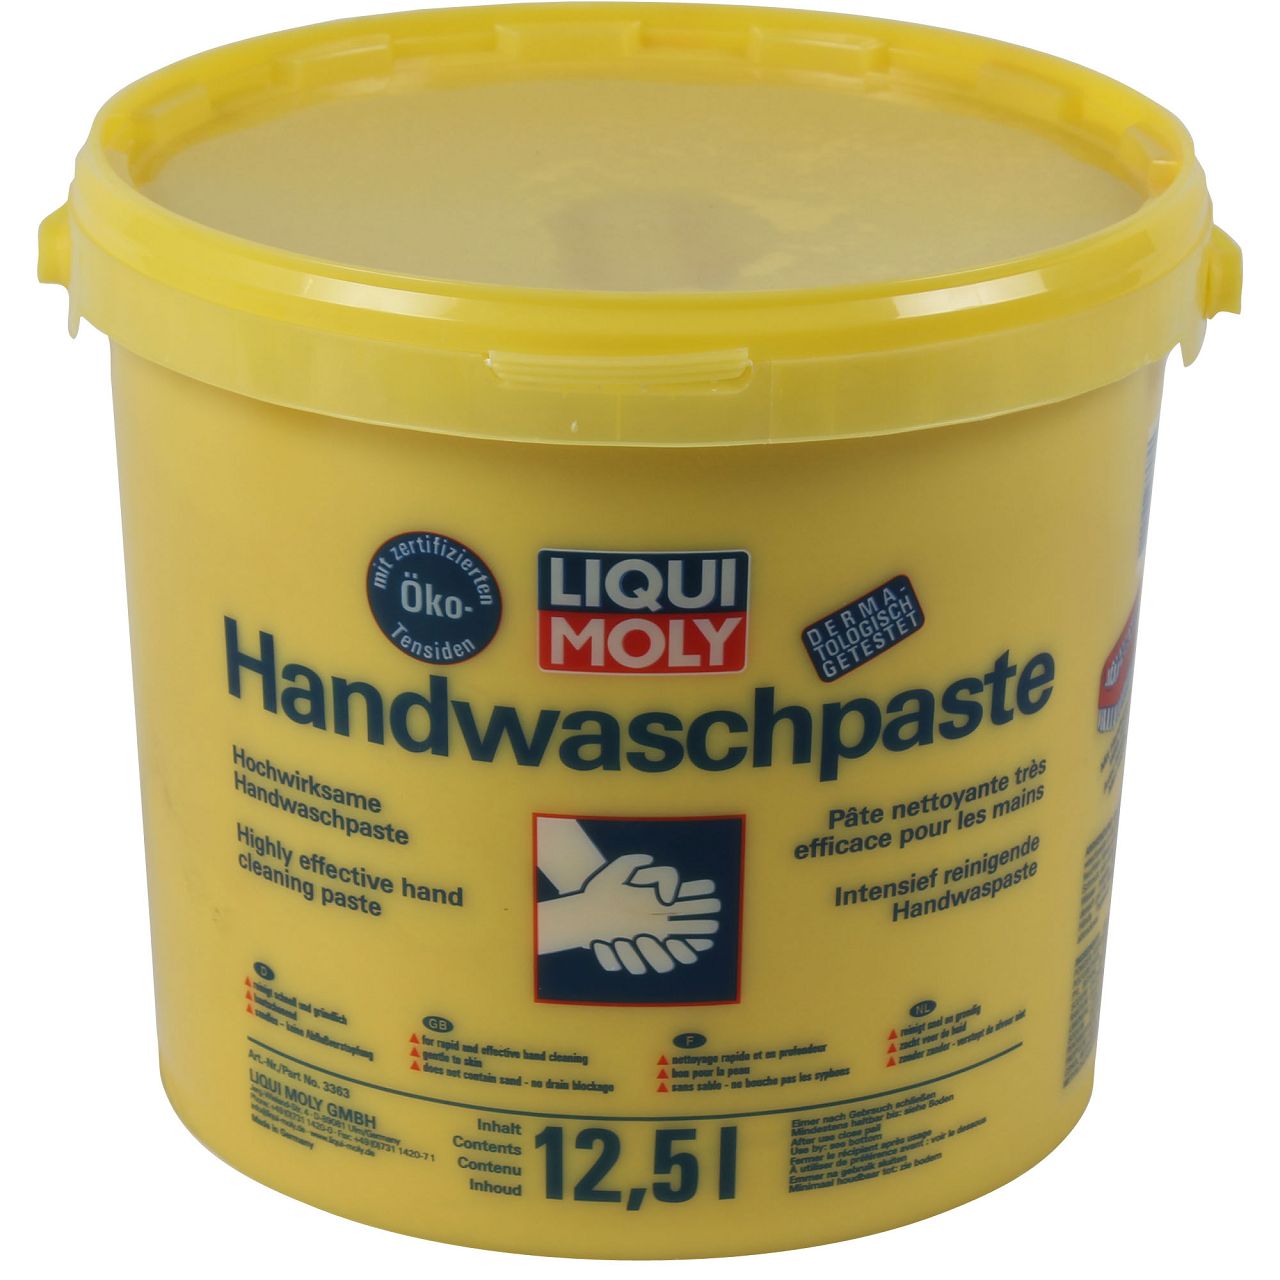 LIQUI MOLY 3363 Handwaschpaste Handwaschcreme Handseife Handreiniger 12,5 Liter